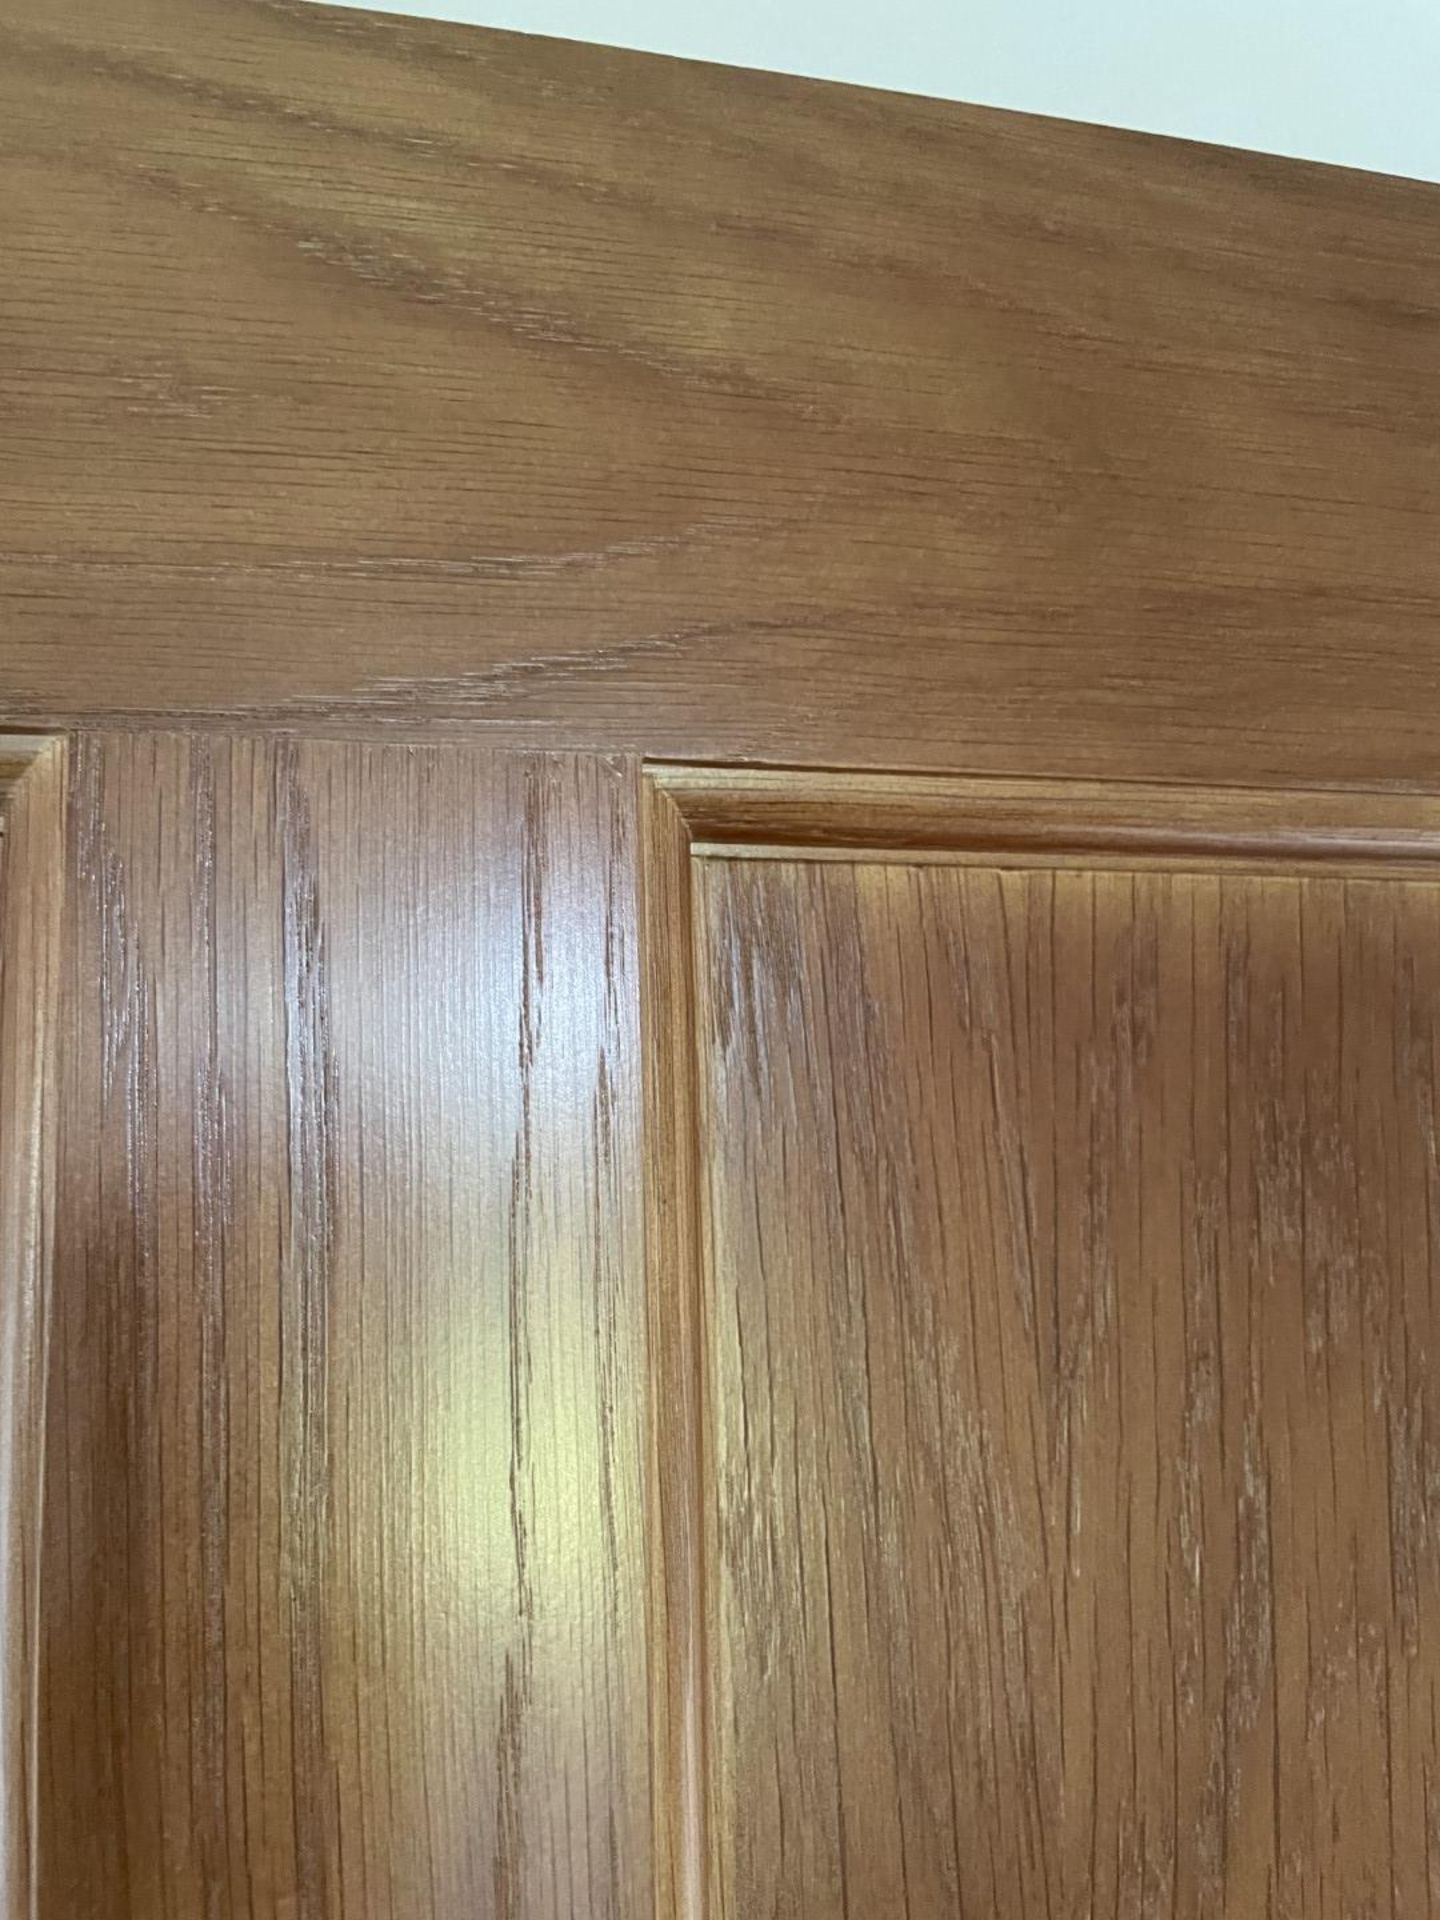 1 x Solid Oak Wooden Lockable Internal Door - Ref: PAN201 / INHLWY - CL896 - NO VAT - Image 5 of 10